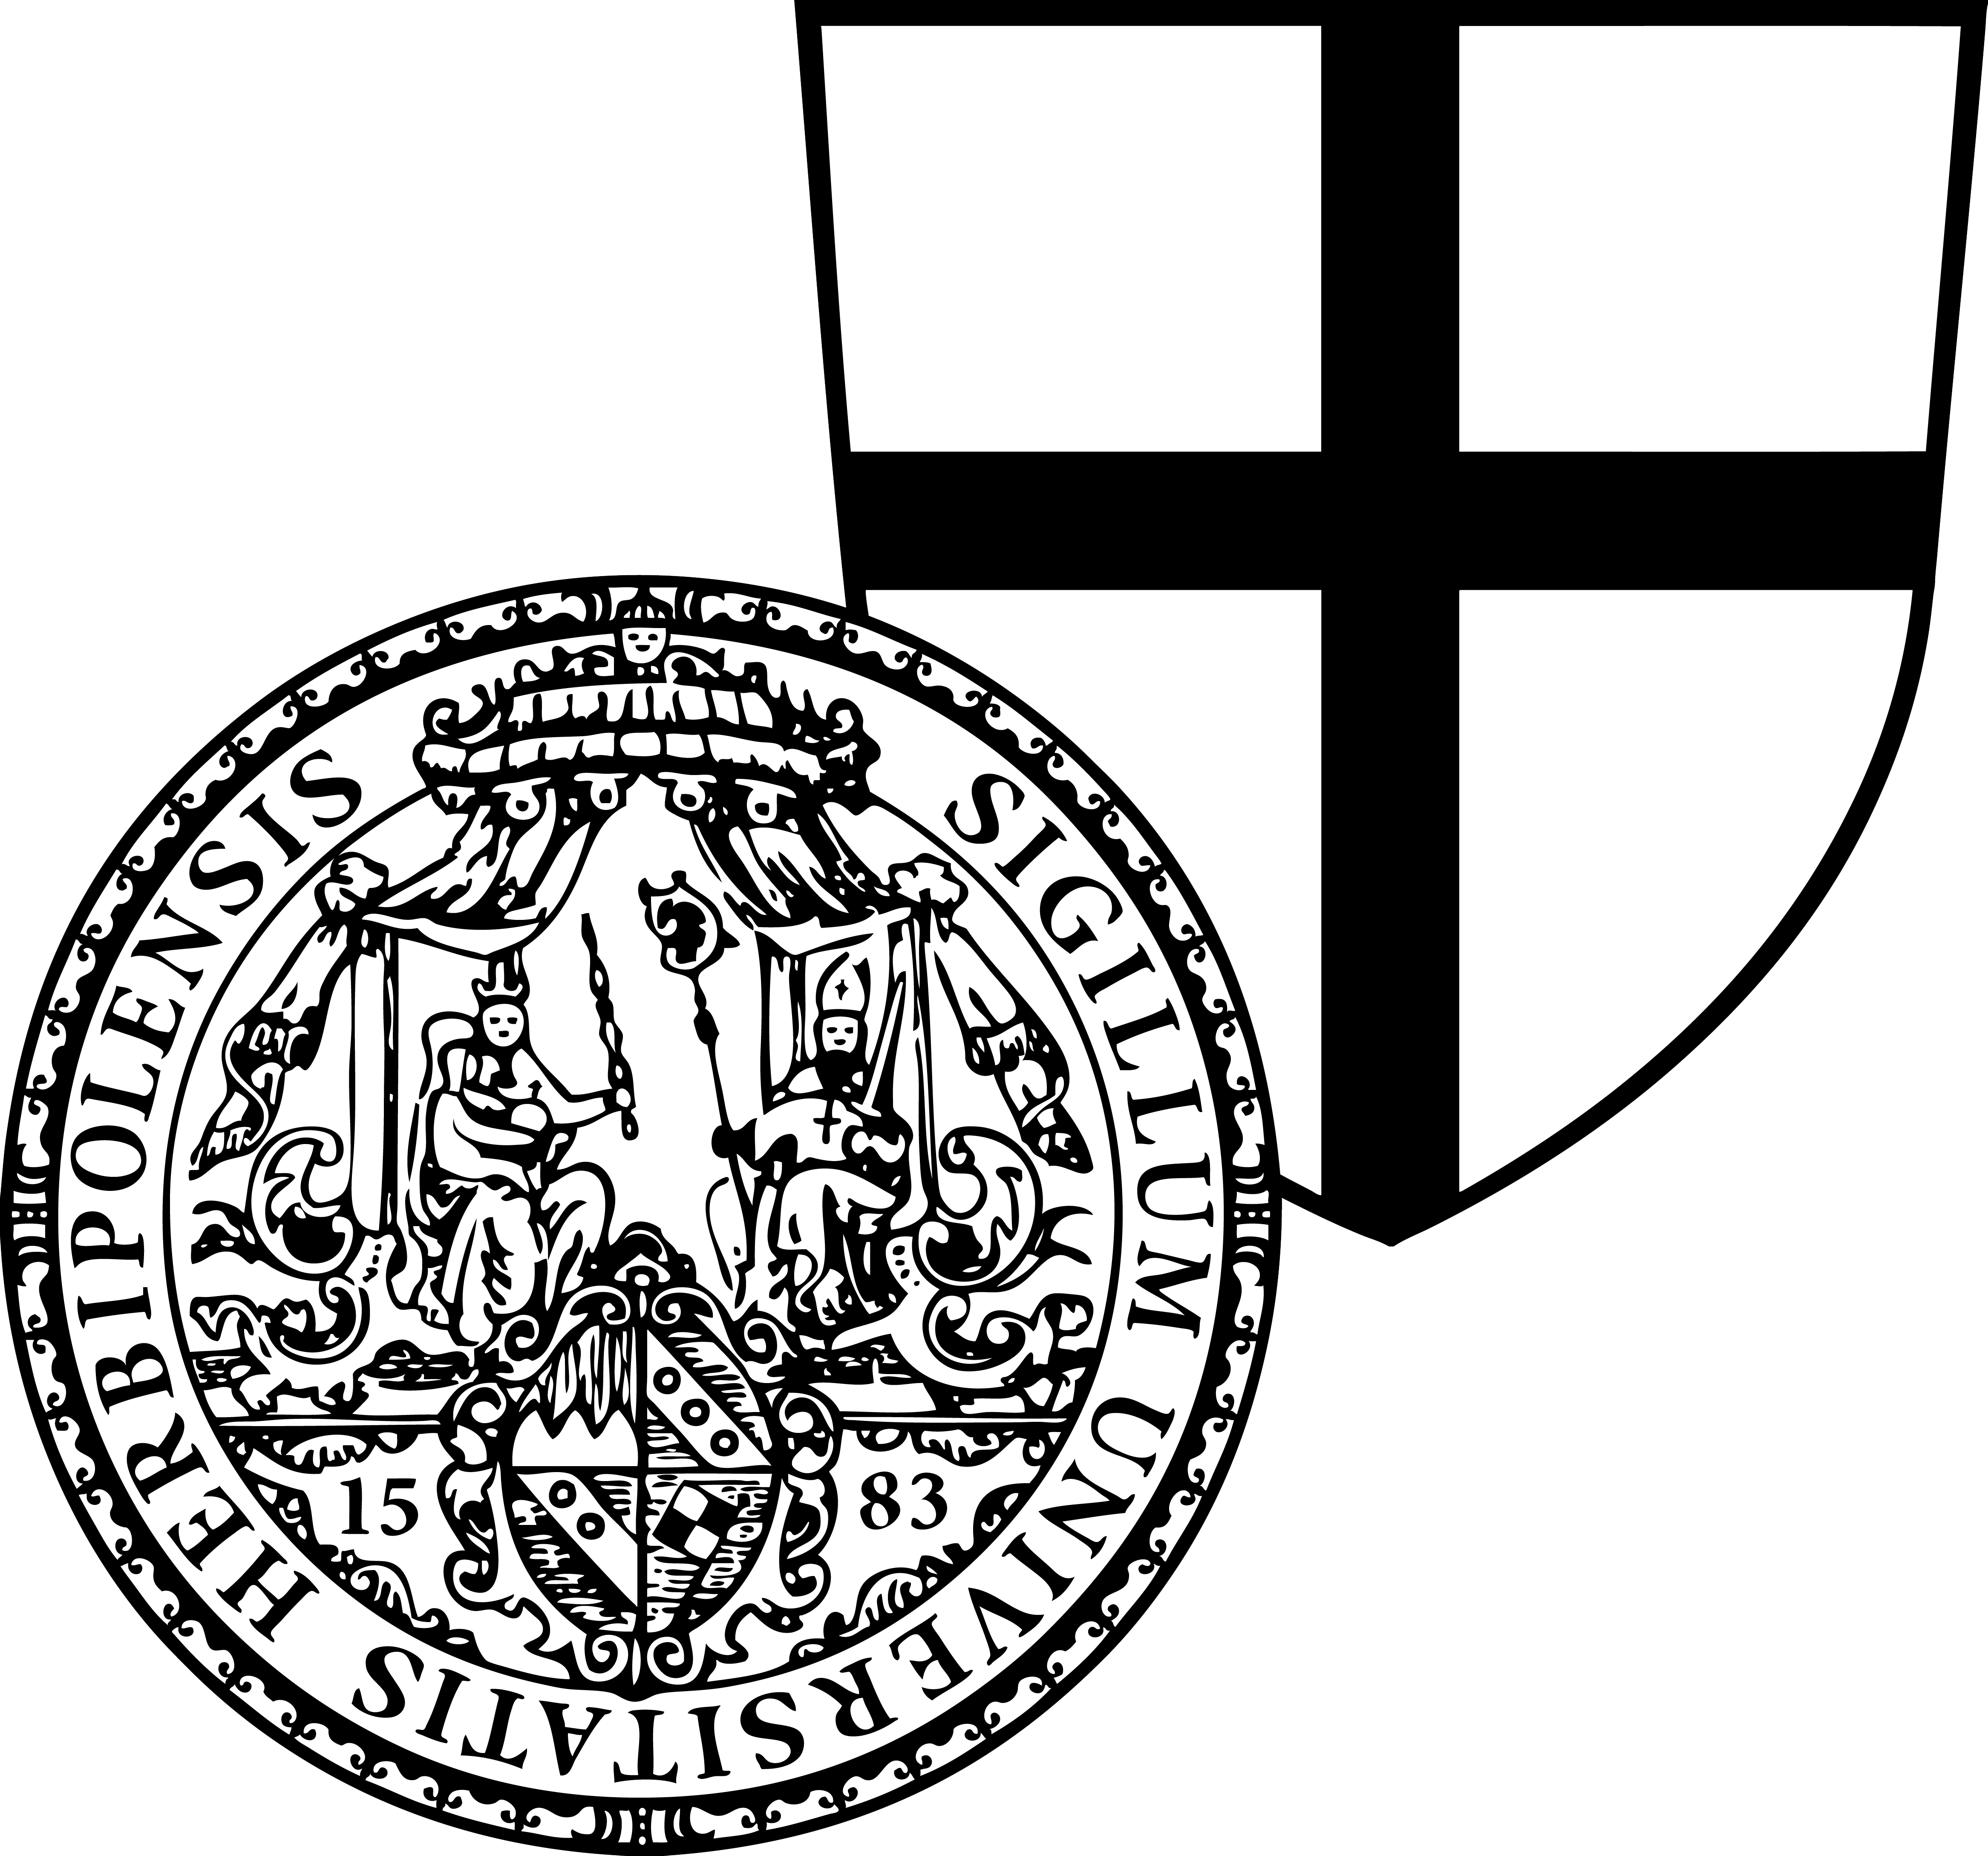 Das Bild zeigt das Wappen der Forschungsstelle Deutscher Orden.